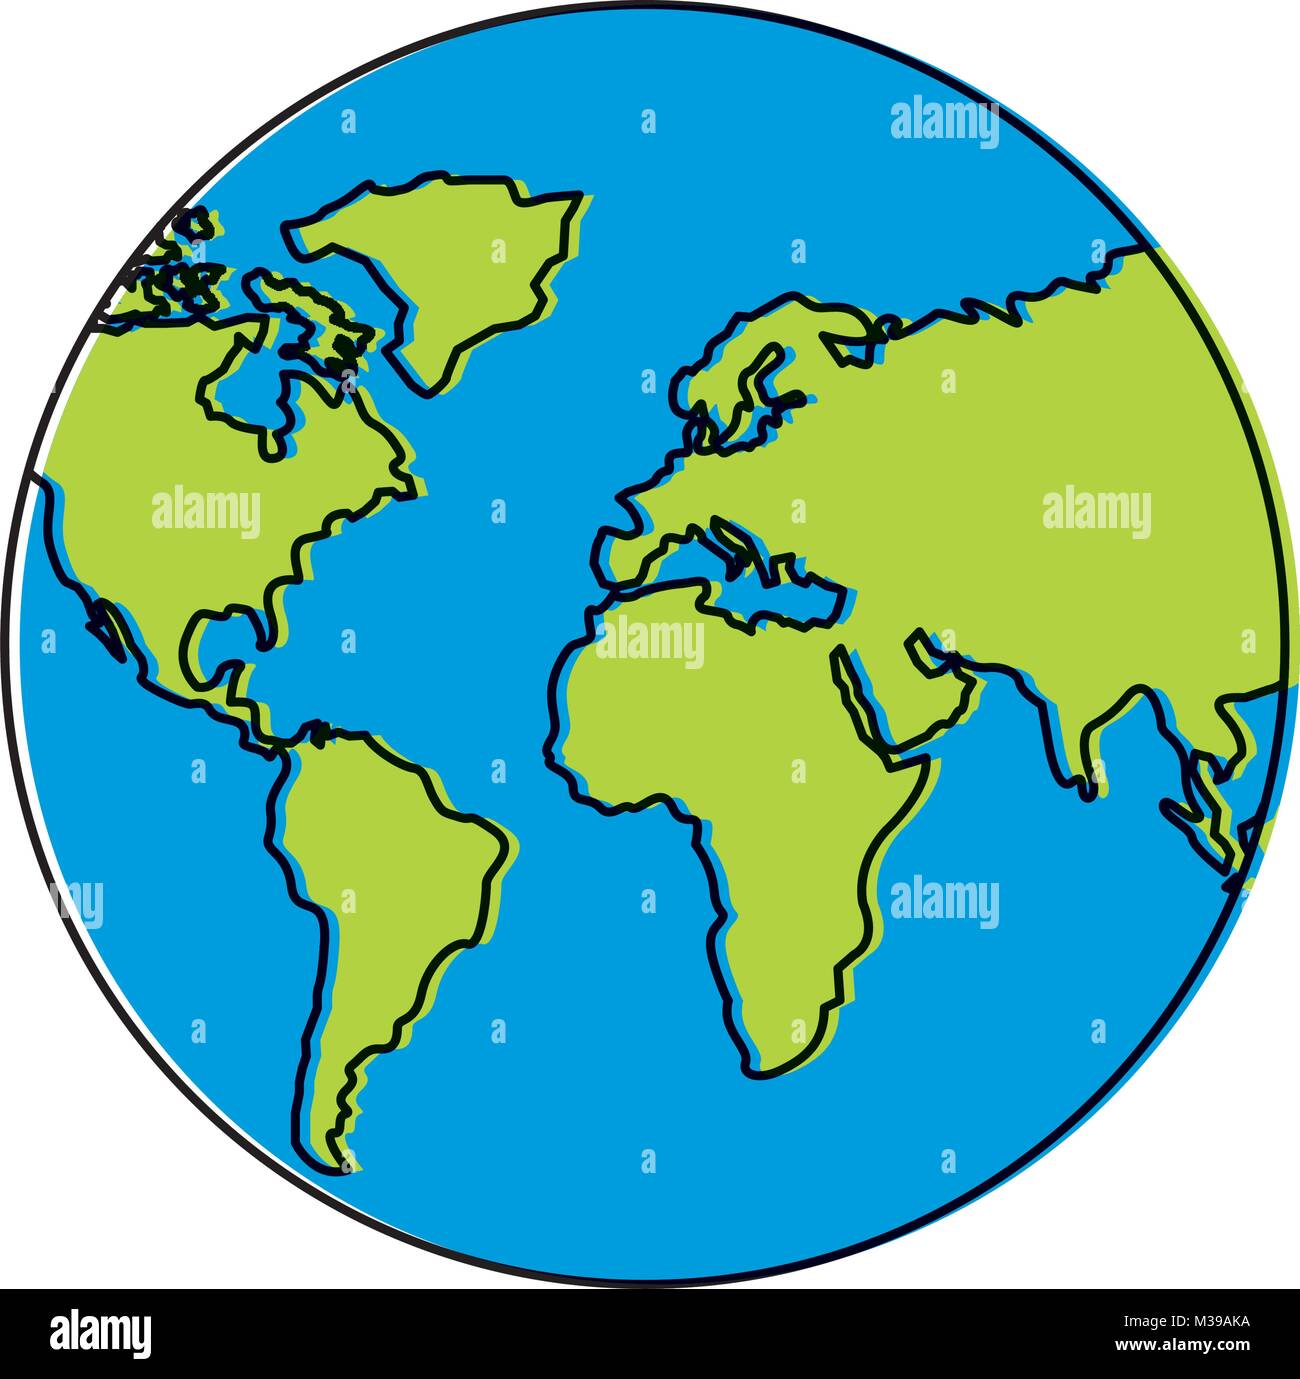 Planeta Tierra Globo Terraqueo Icono De Mapa Ilustracion Del